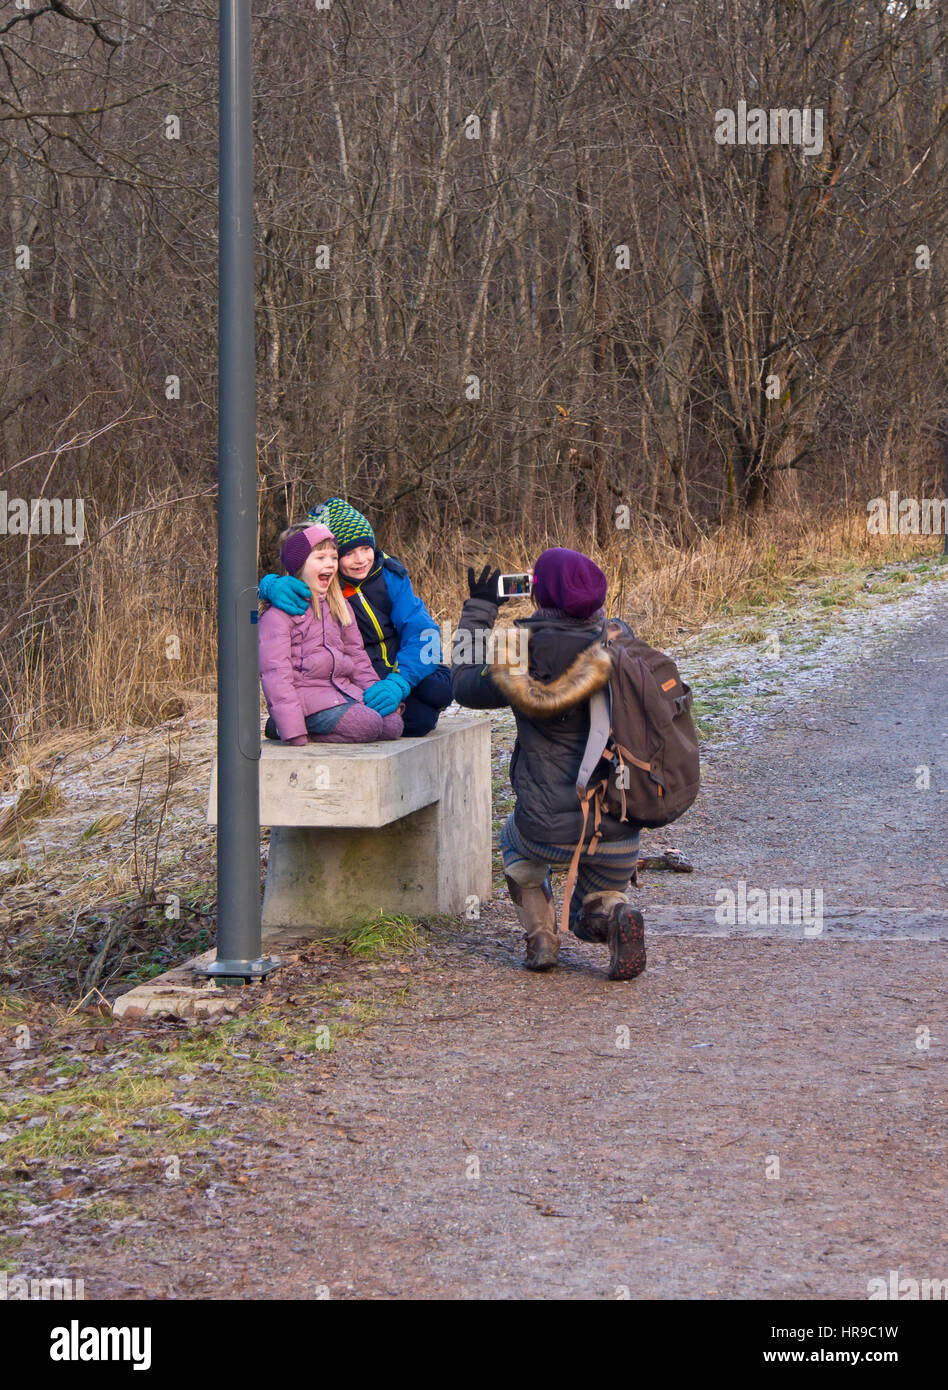 Smartphone-Fotografie, Mutter auf einen Sonntagsausflug schießen zwei Kinder Grimassen und lachend auf einer Bank in einem Wald, Oslo Norwegen Stockfoto